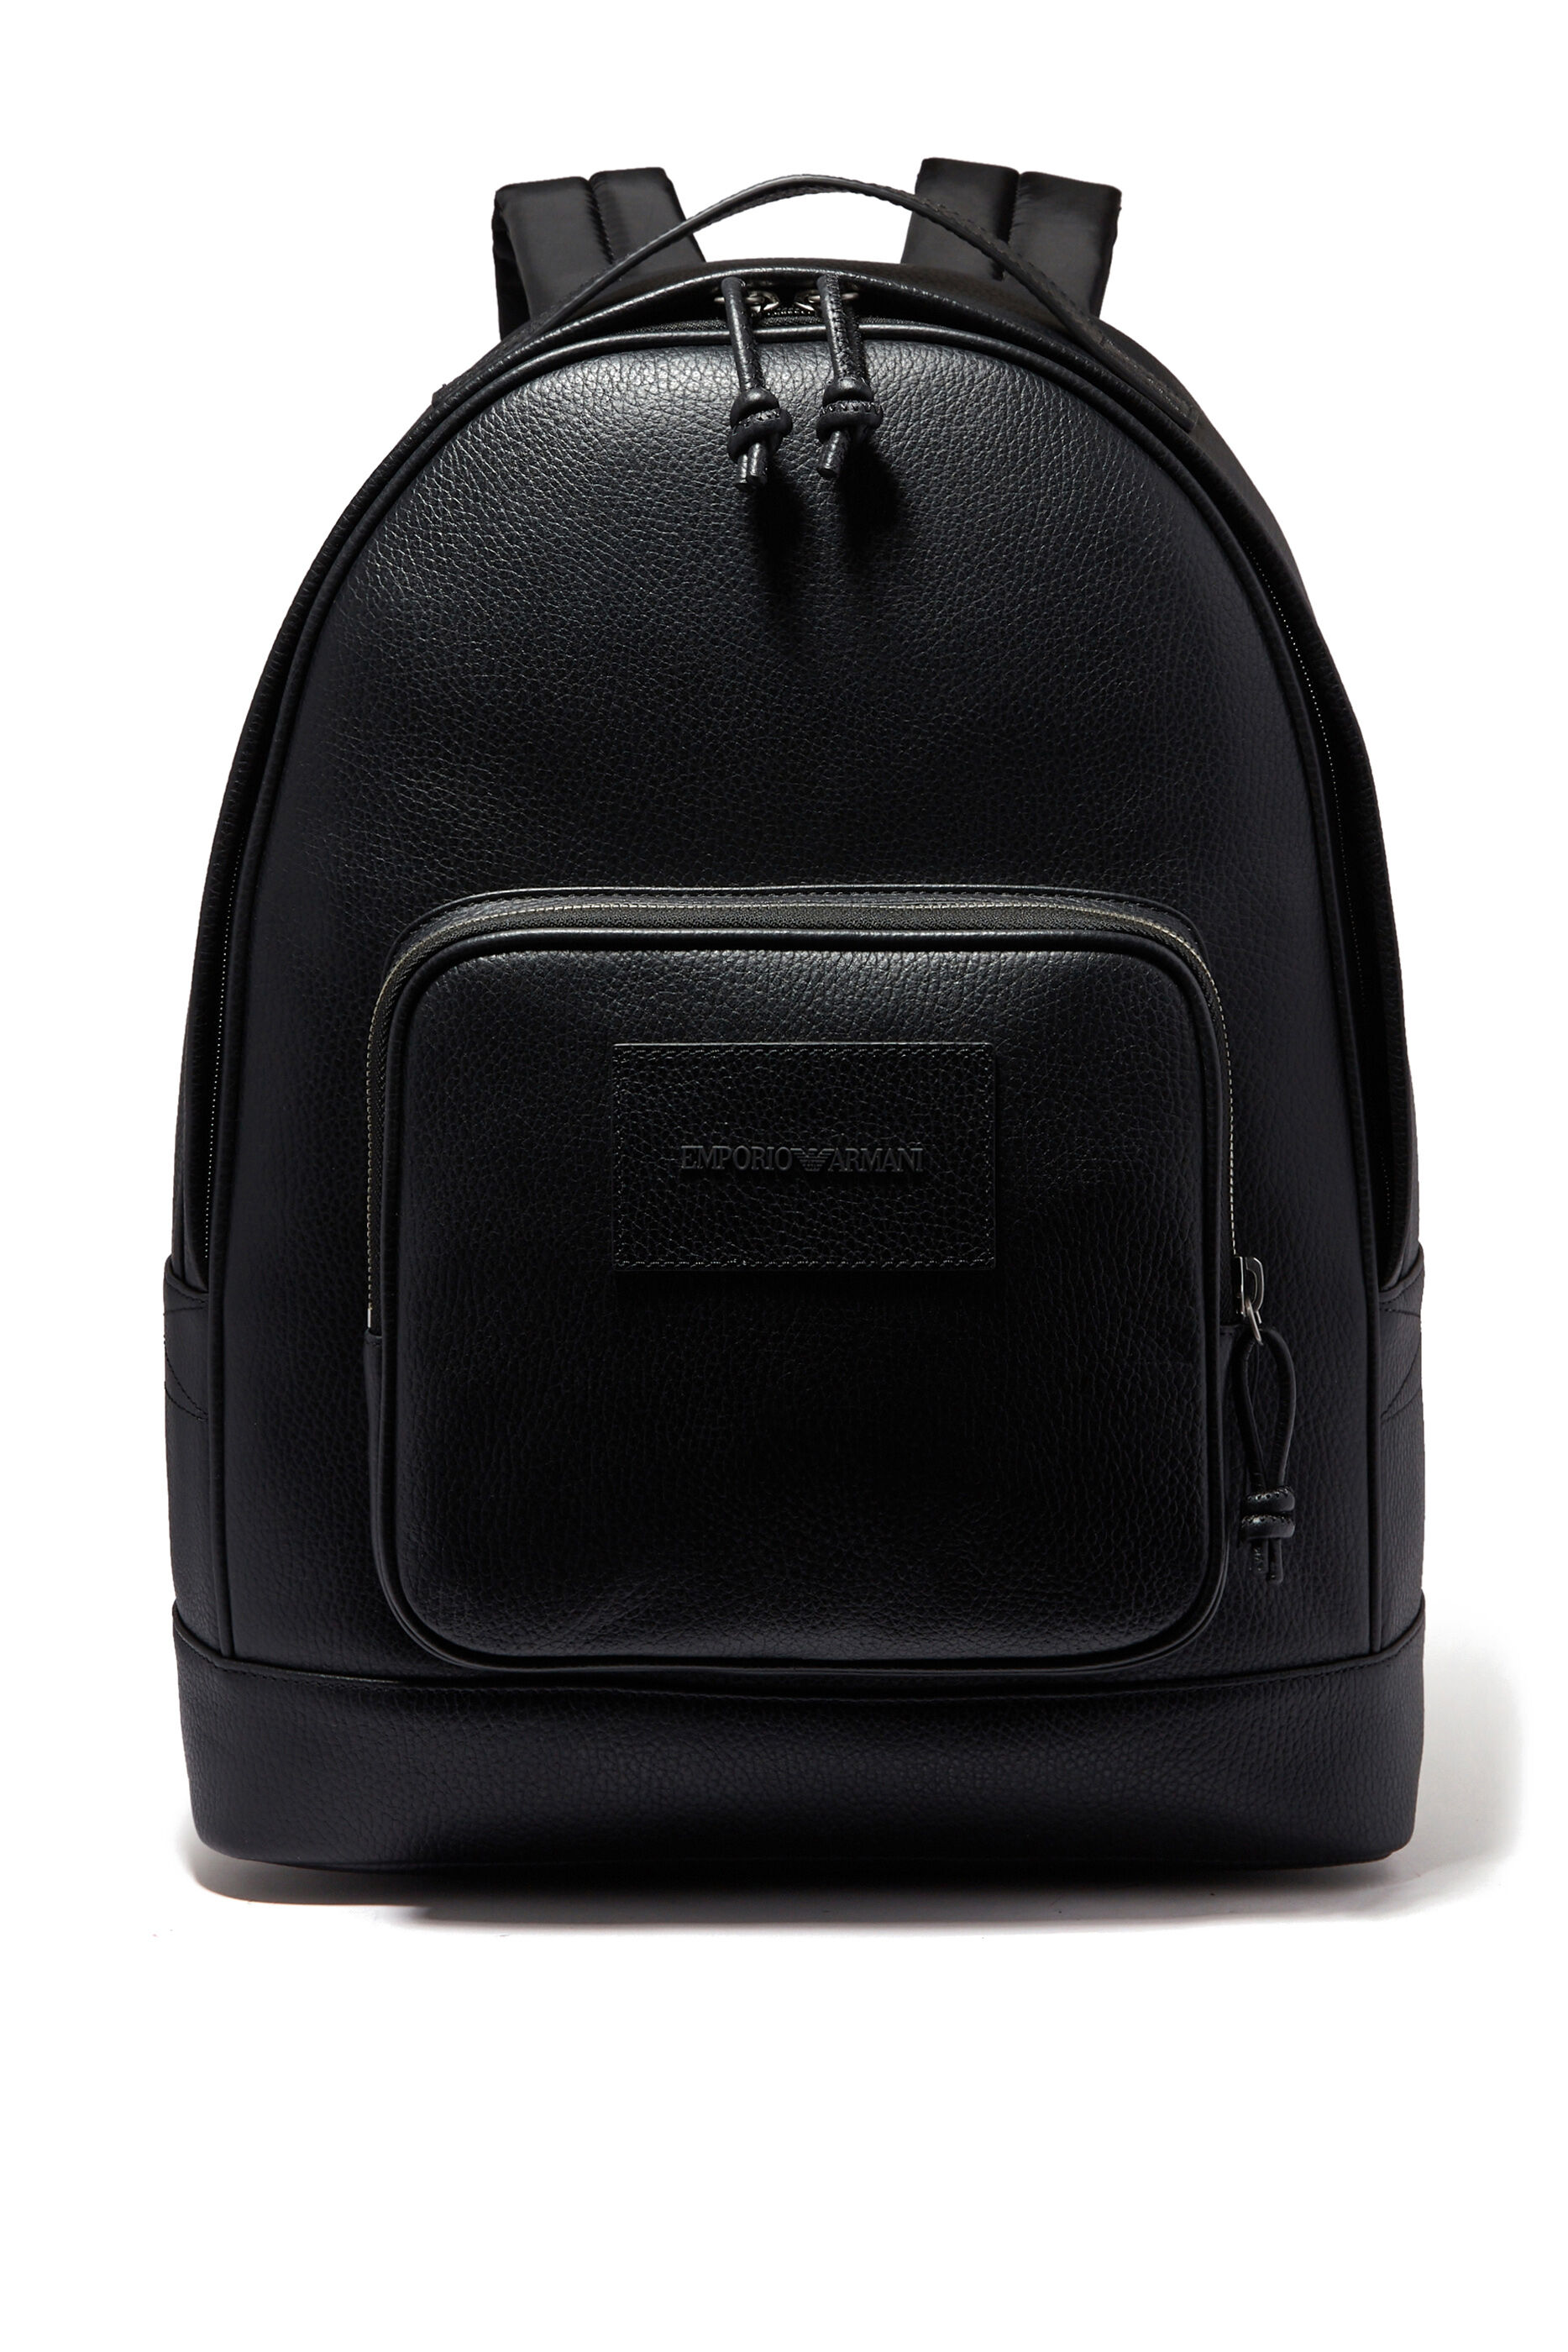 Little America Backpack Bloomingdales Men Accessories Bags Laptop Bags 